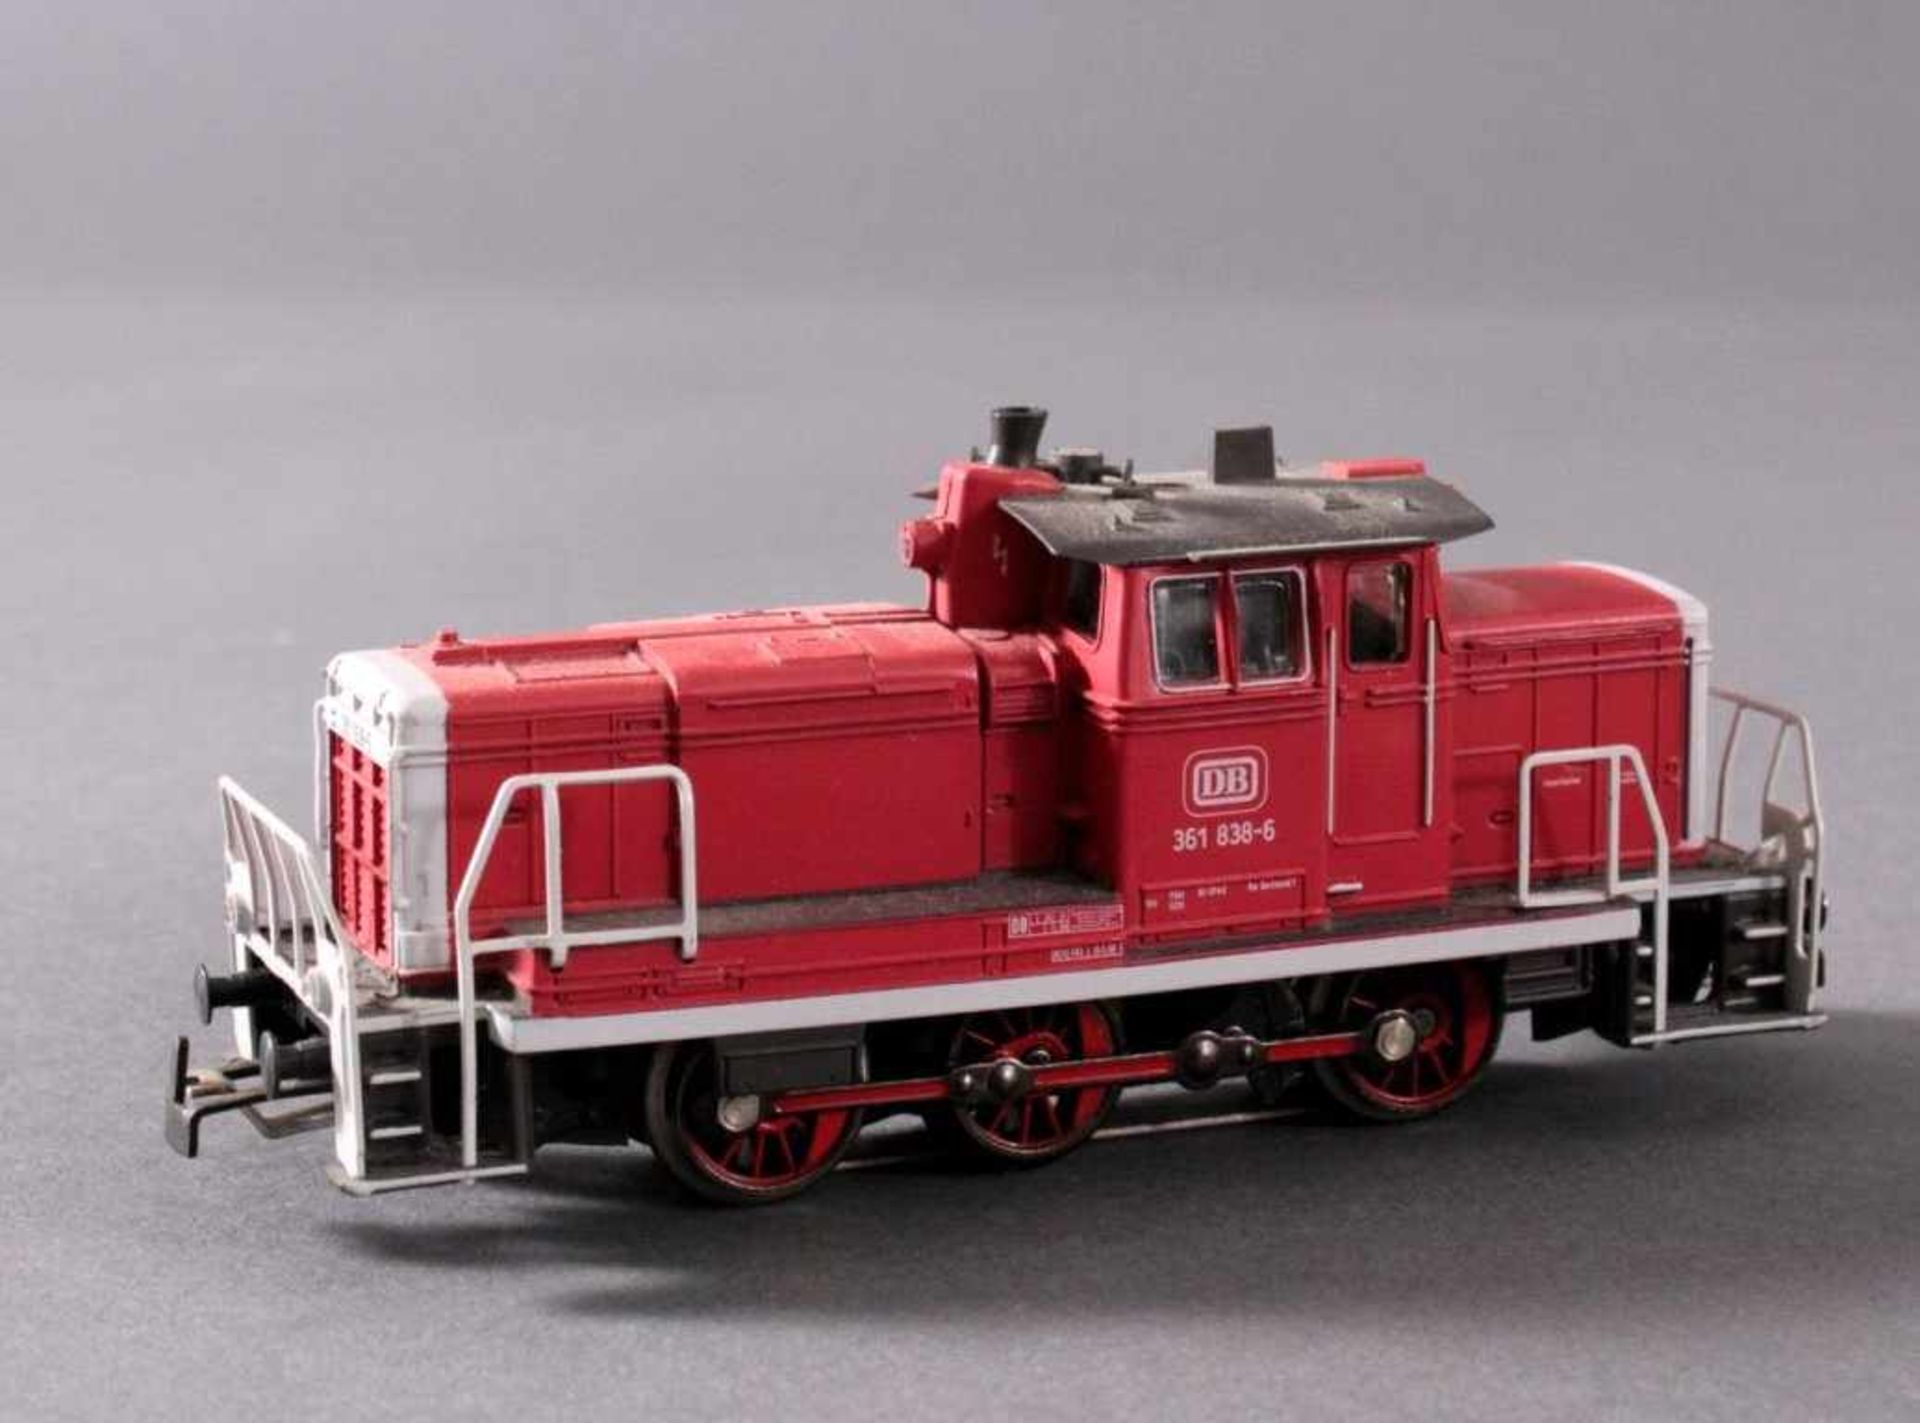 Märklin H0 3131 Diesel-Lok Baureihe 361 838 in rot mit5 Güterwaggons - Bild 2 aus 3